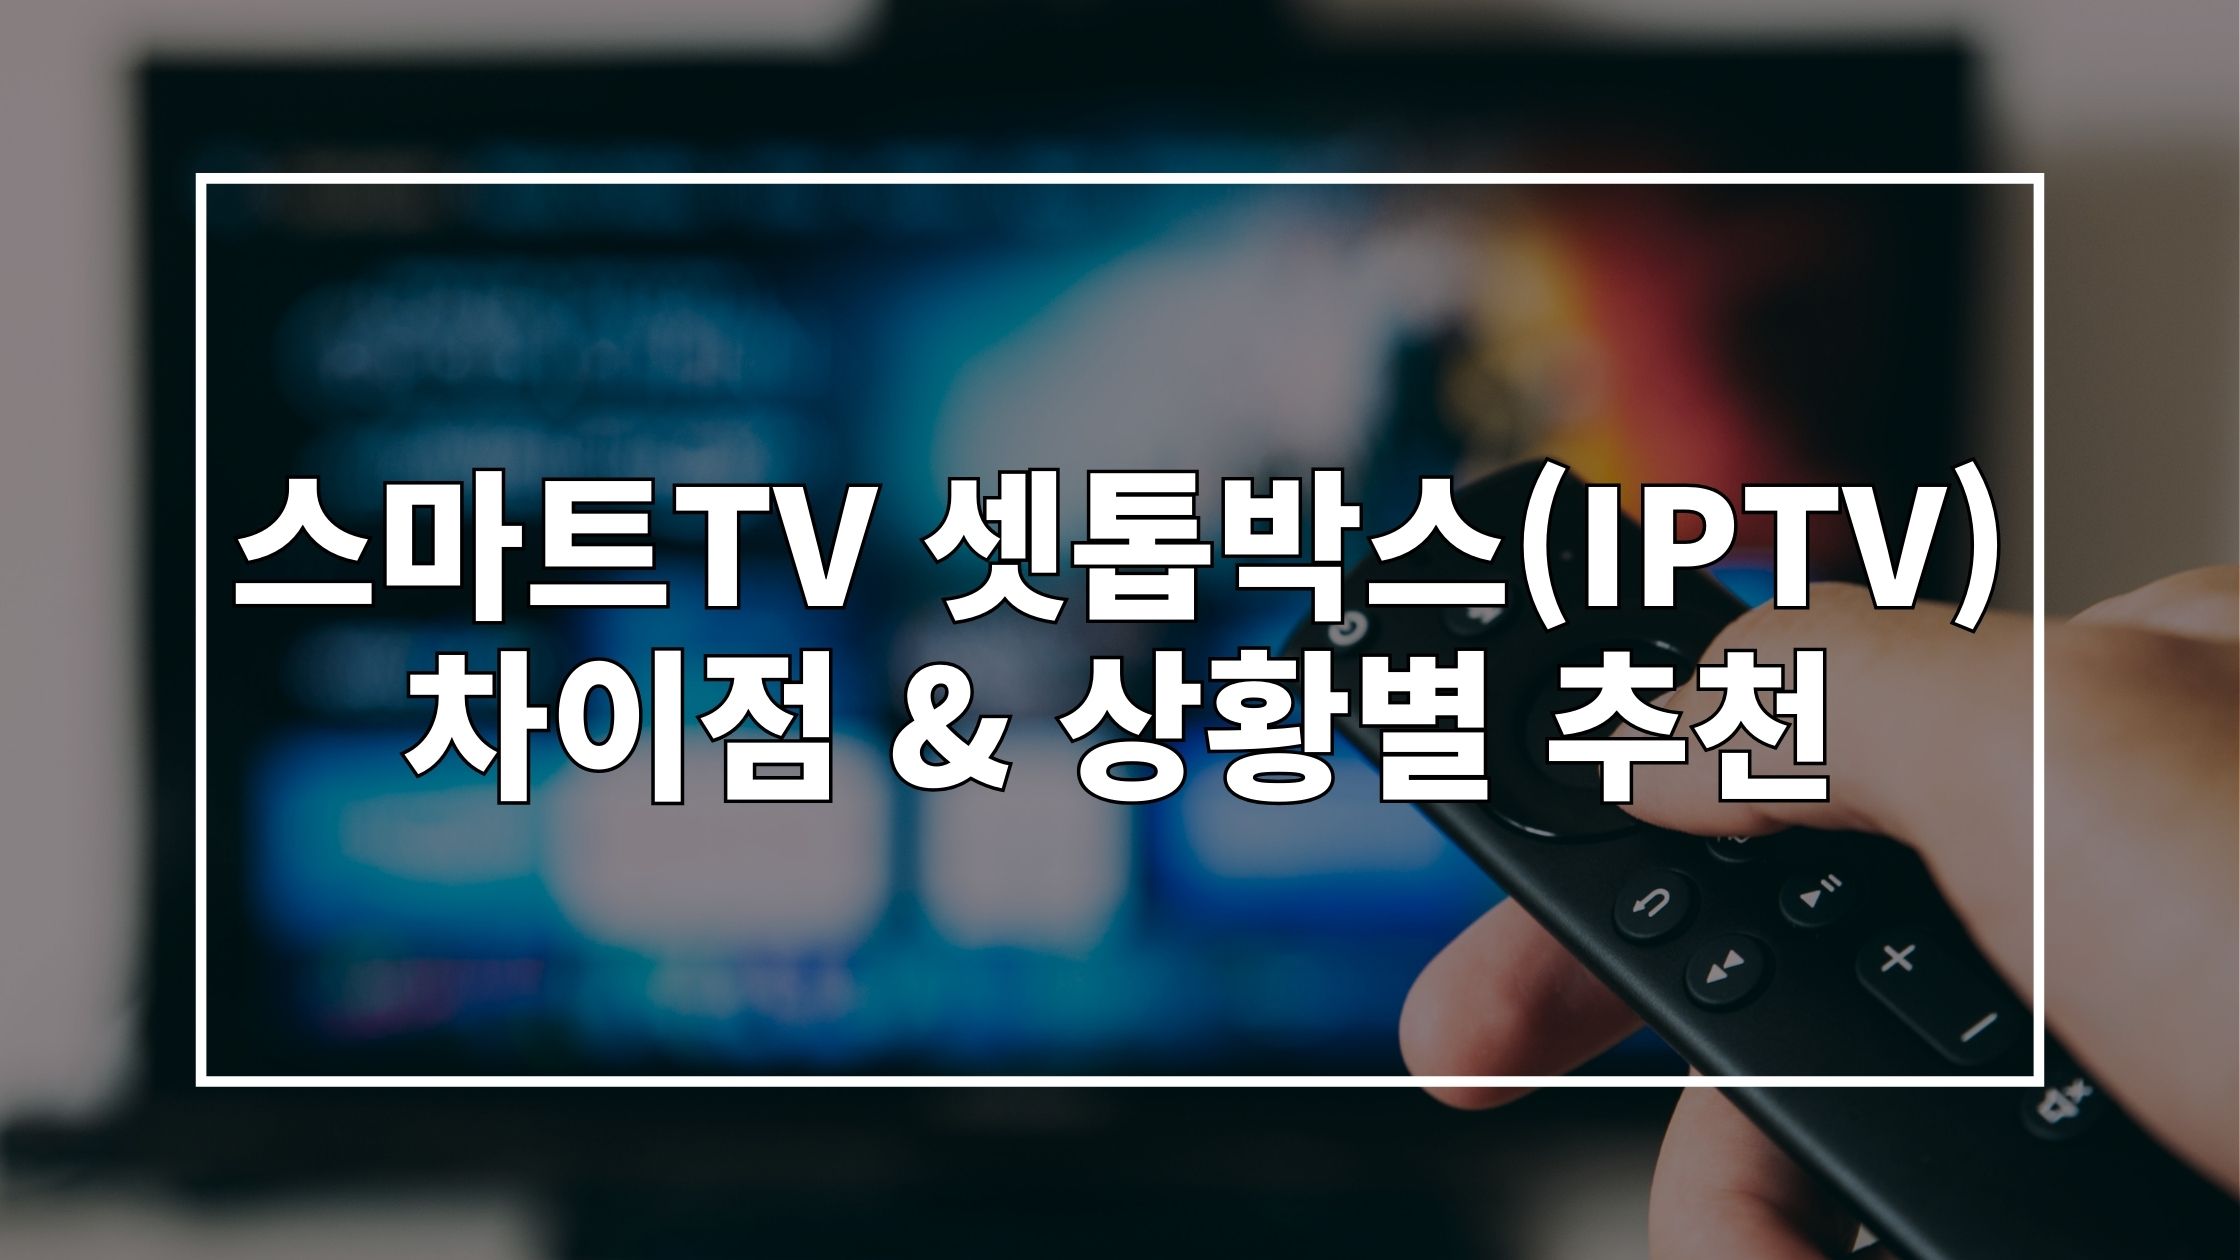 리모콘으로 티비를 켜는 사진 위에 '스마트TV 셋톱박스(IPTV) 차이점 & 상황별 추천'이라고 쓰인 썸네일 이미지입니다.